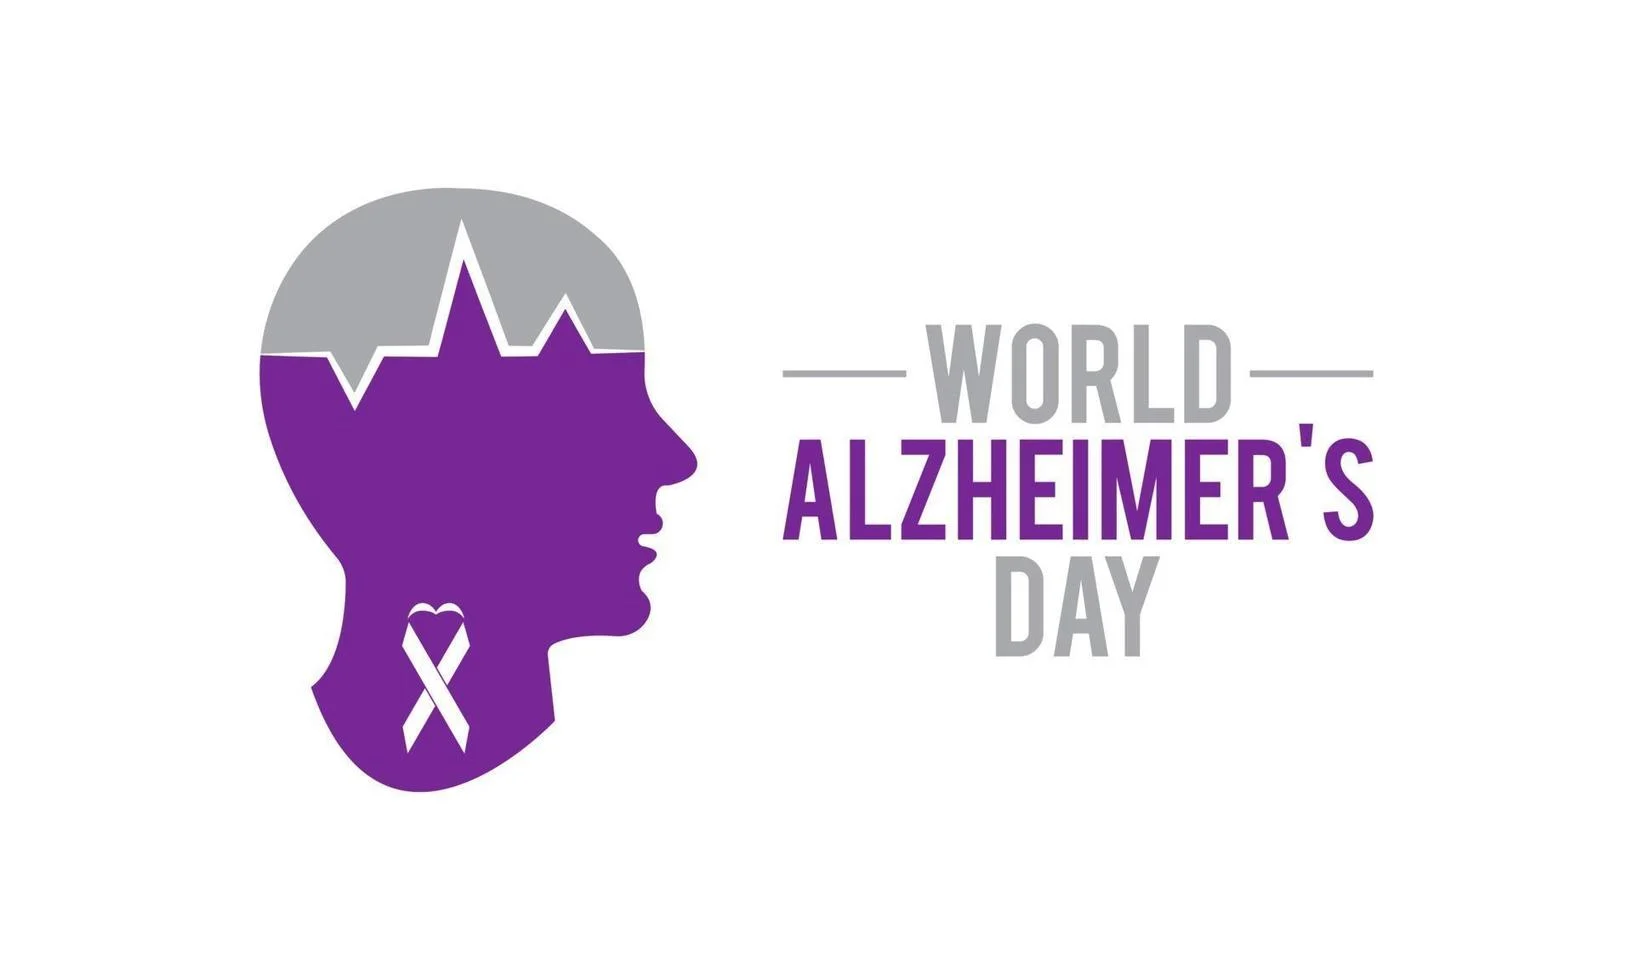 World Alzheimer's Day 2021